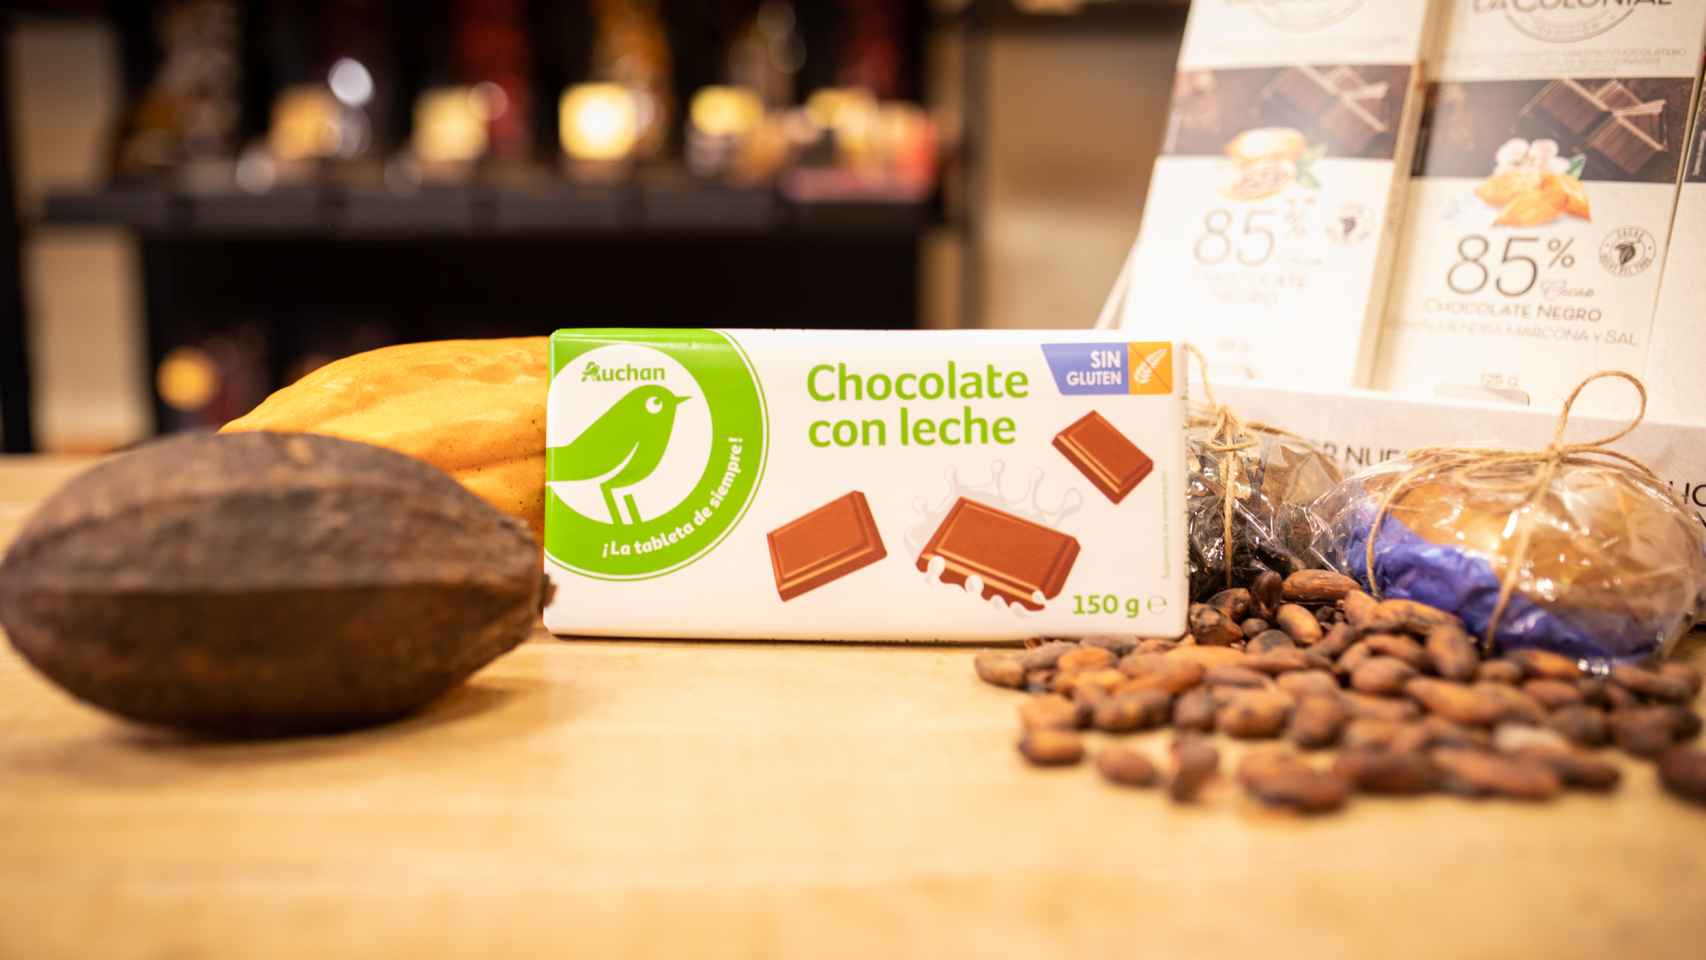 La tableta de chocolate con leche de Auchan, la marca blanca de Alcampo.